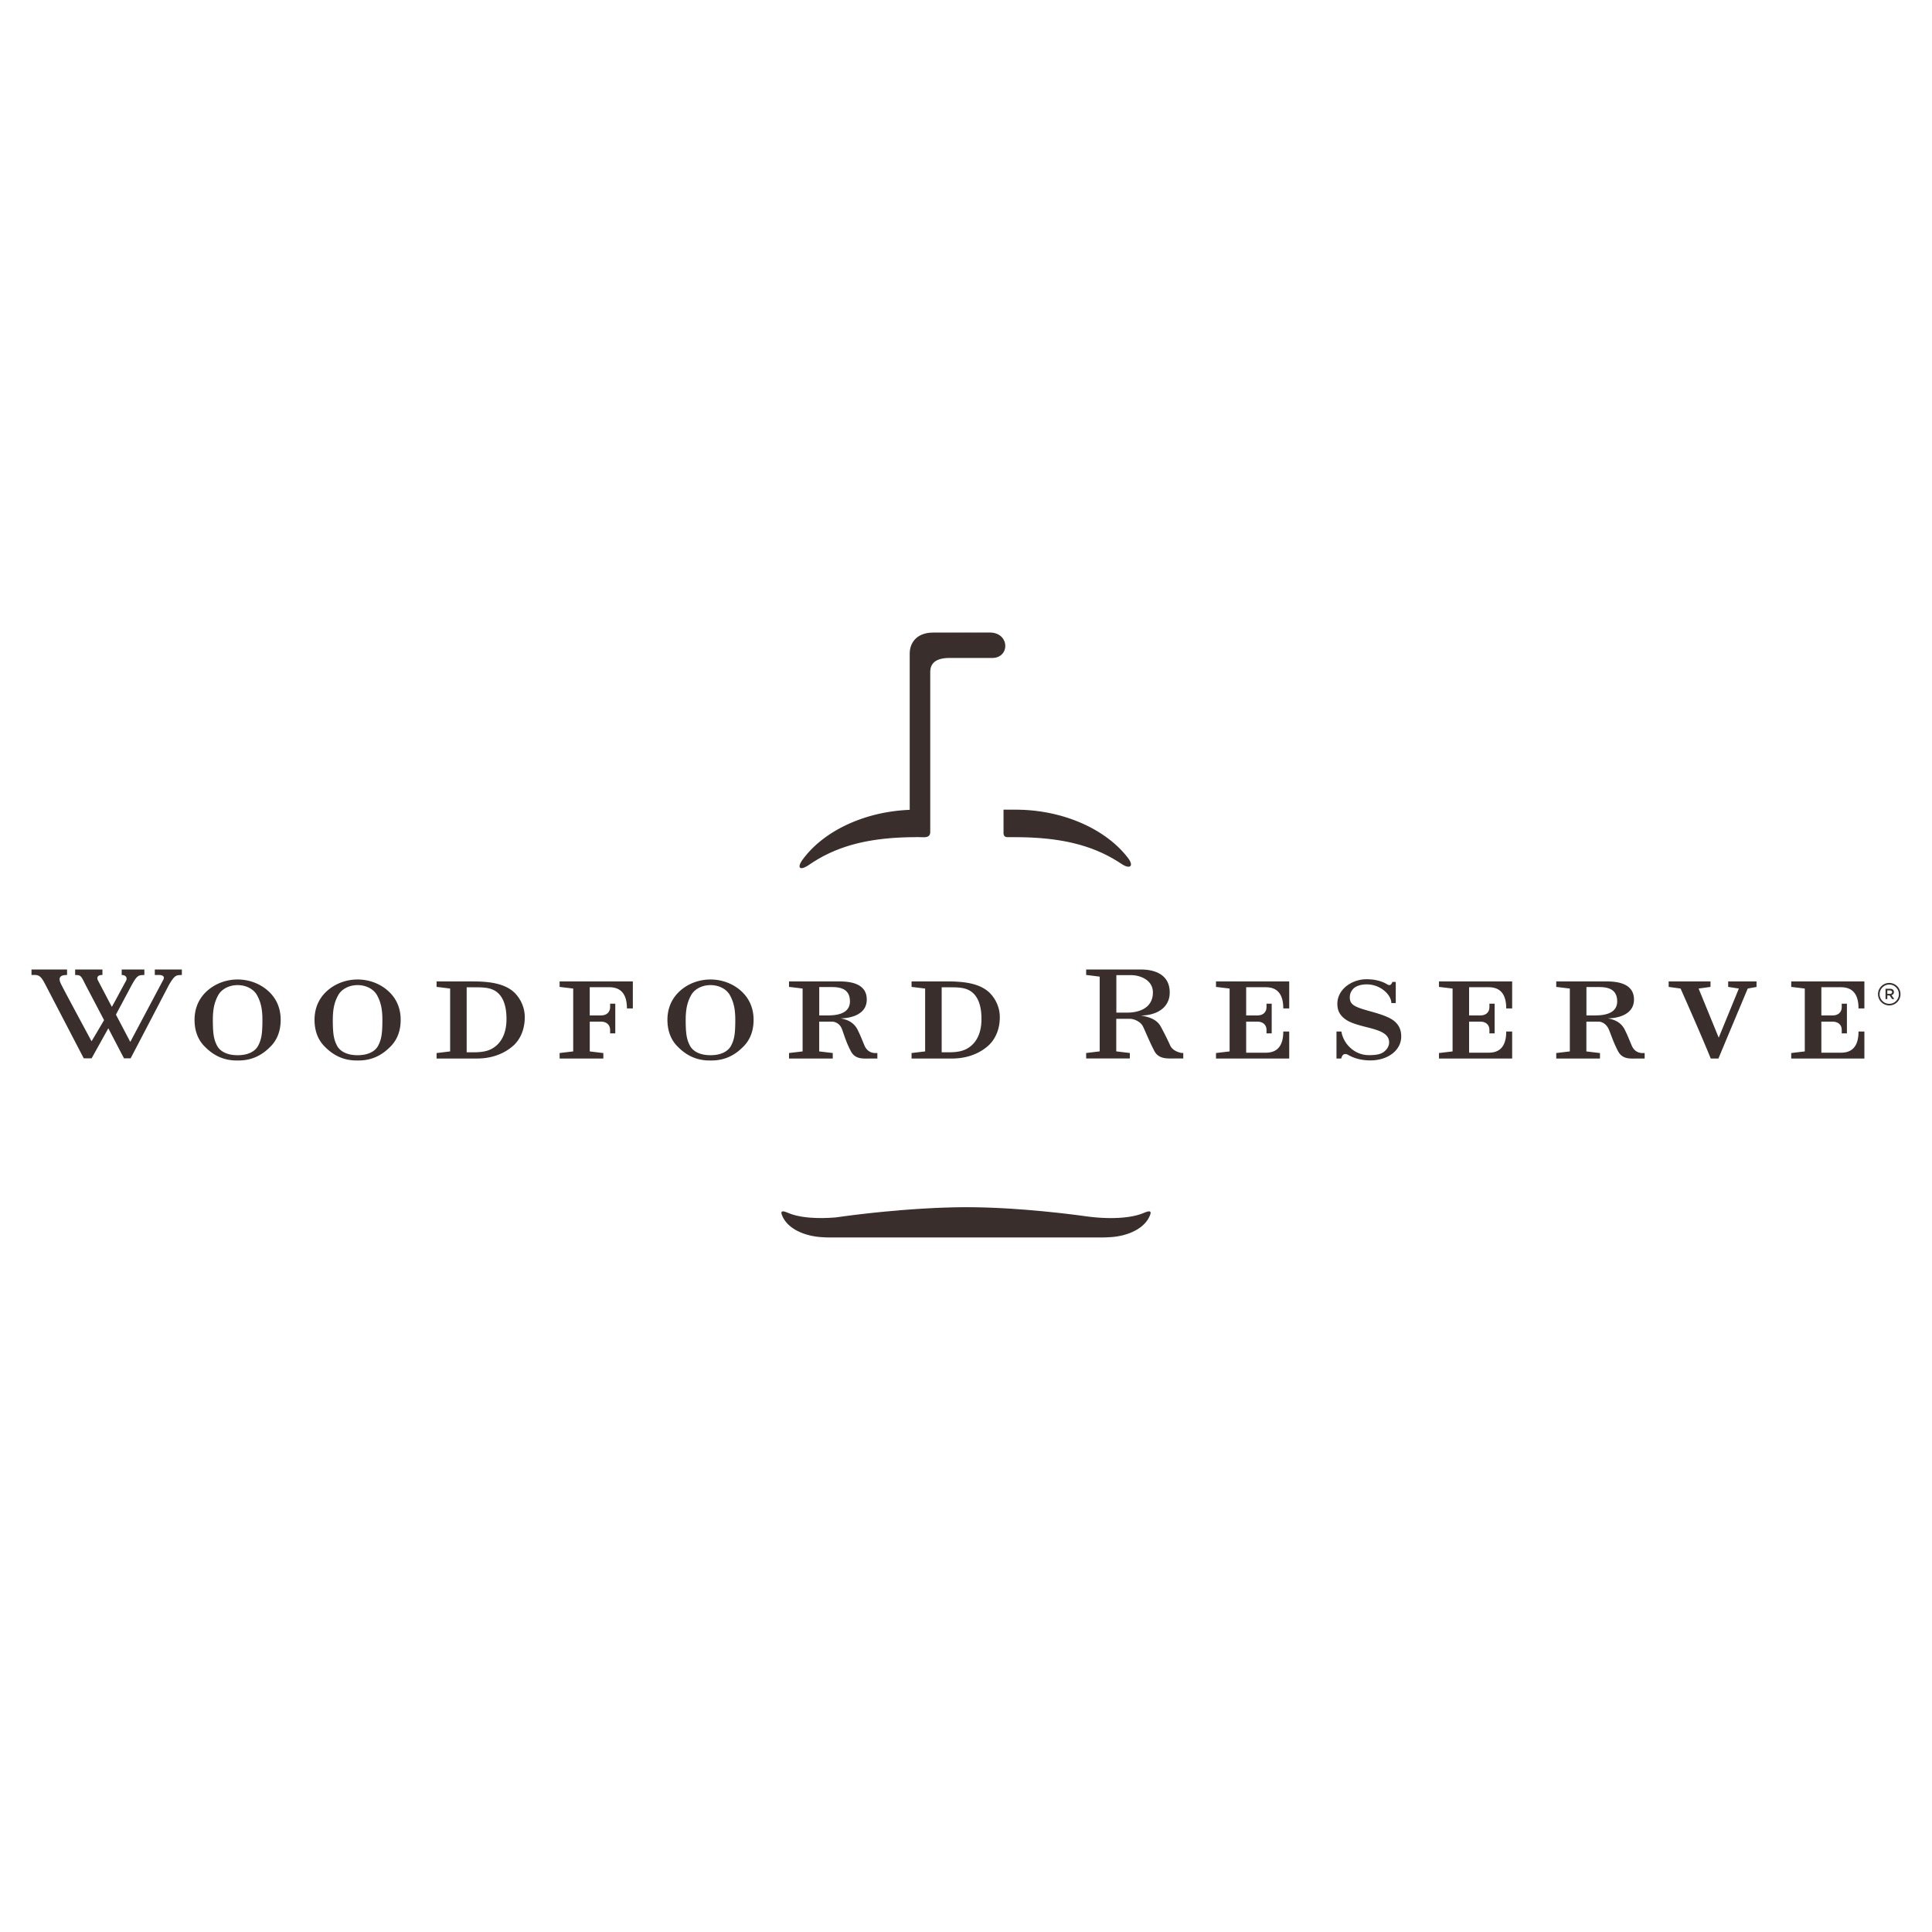 Woodford Reserve Logo.